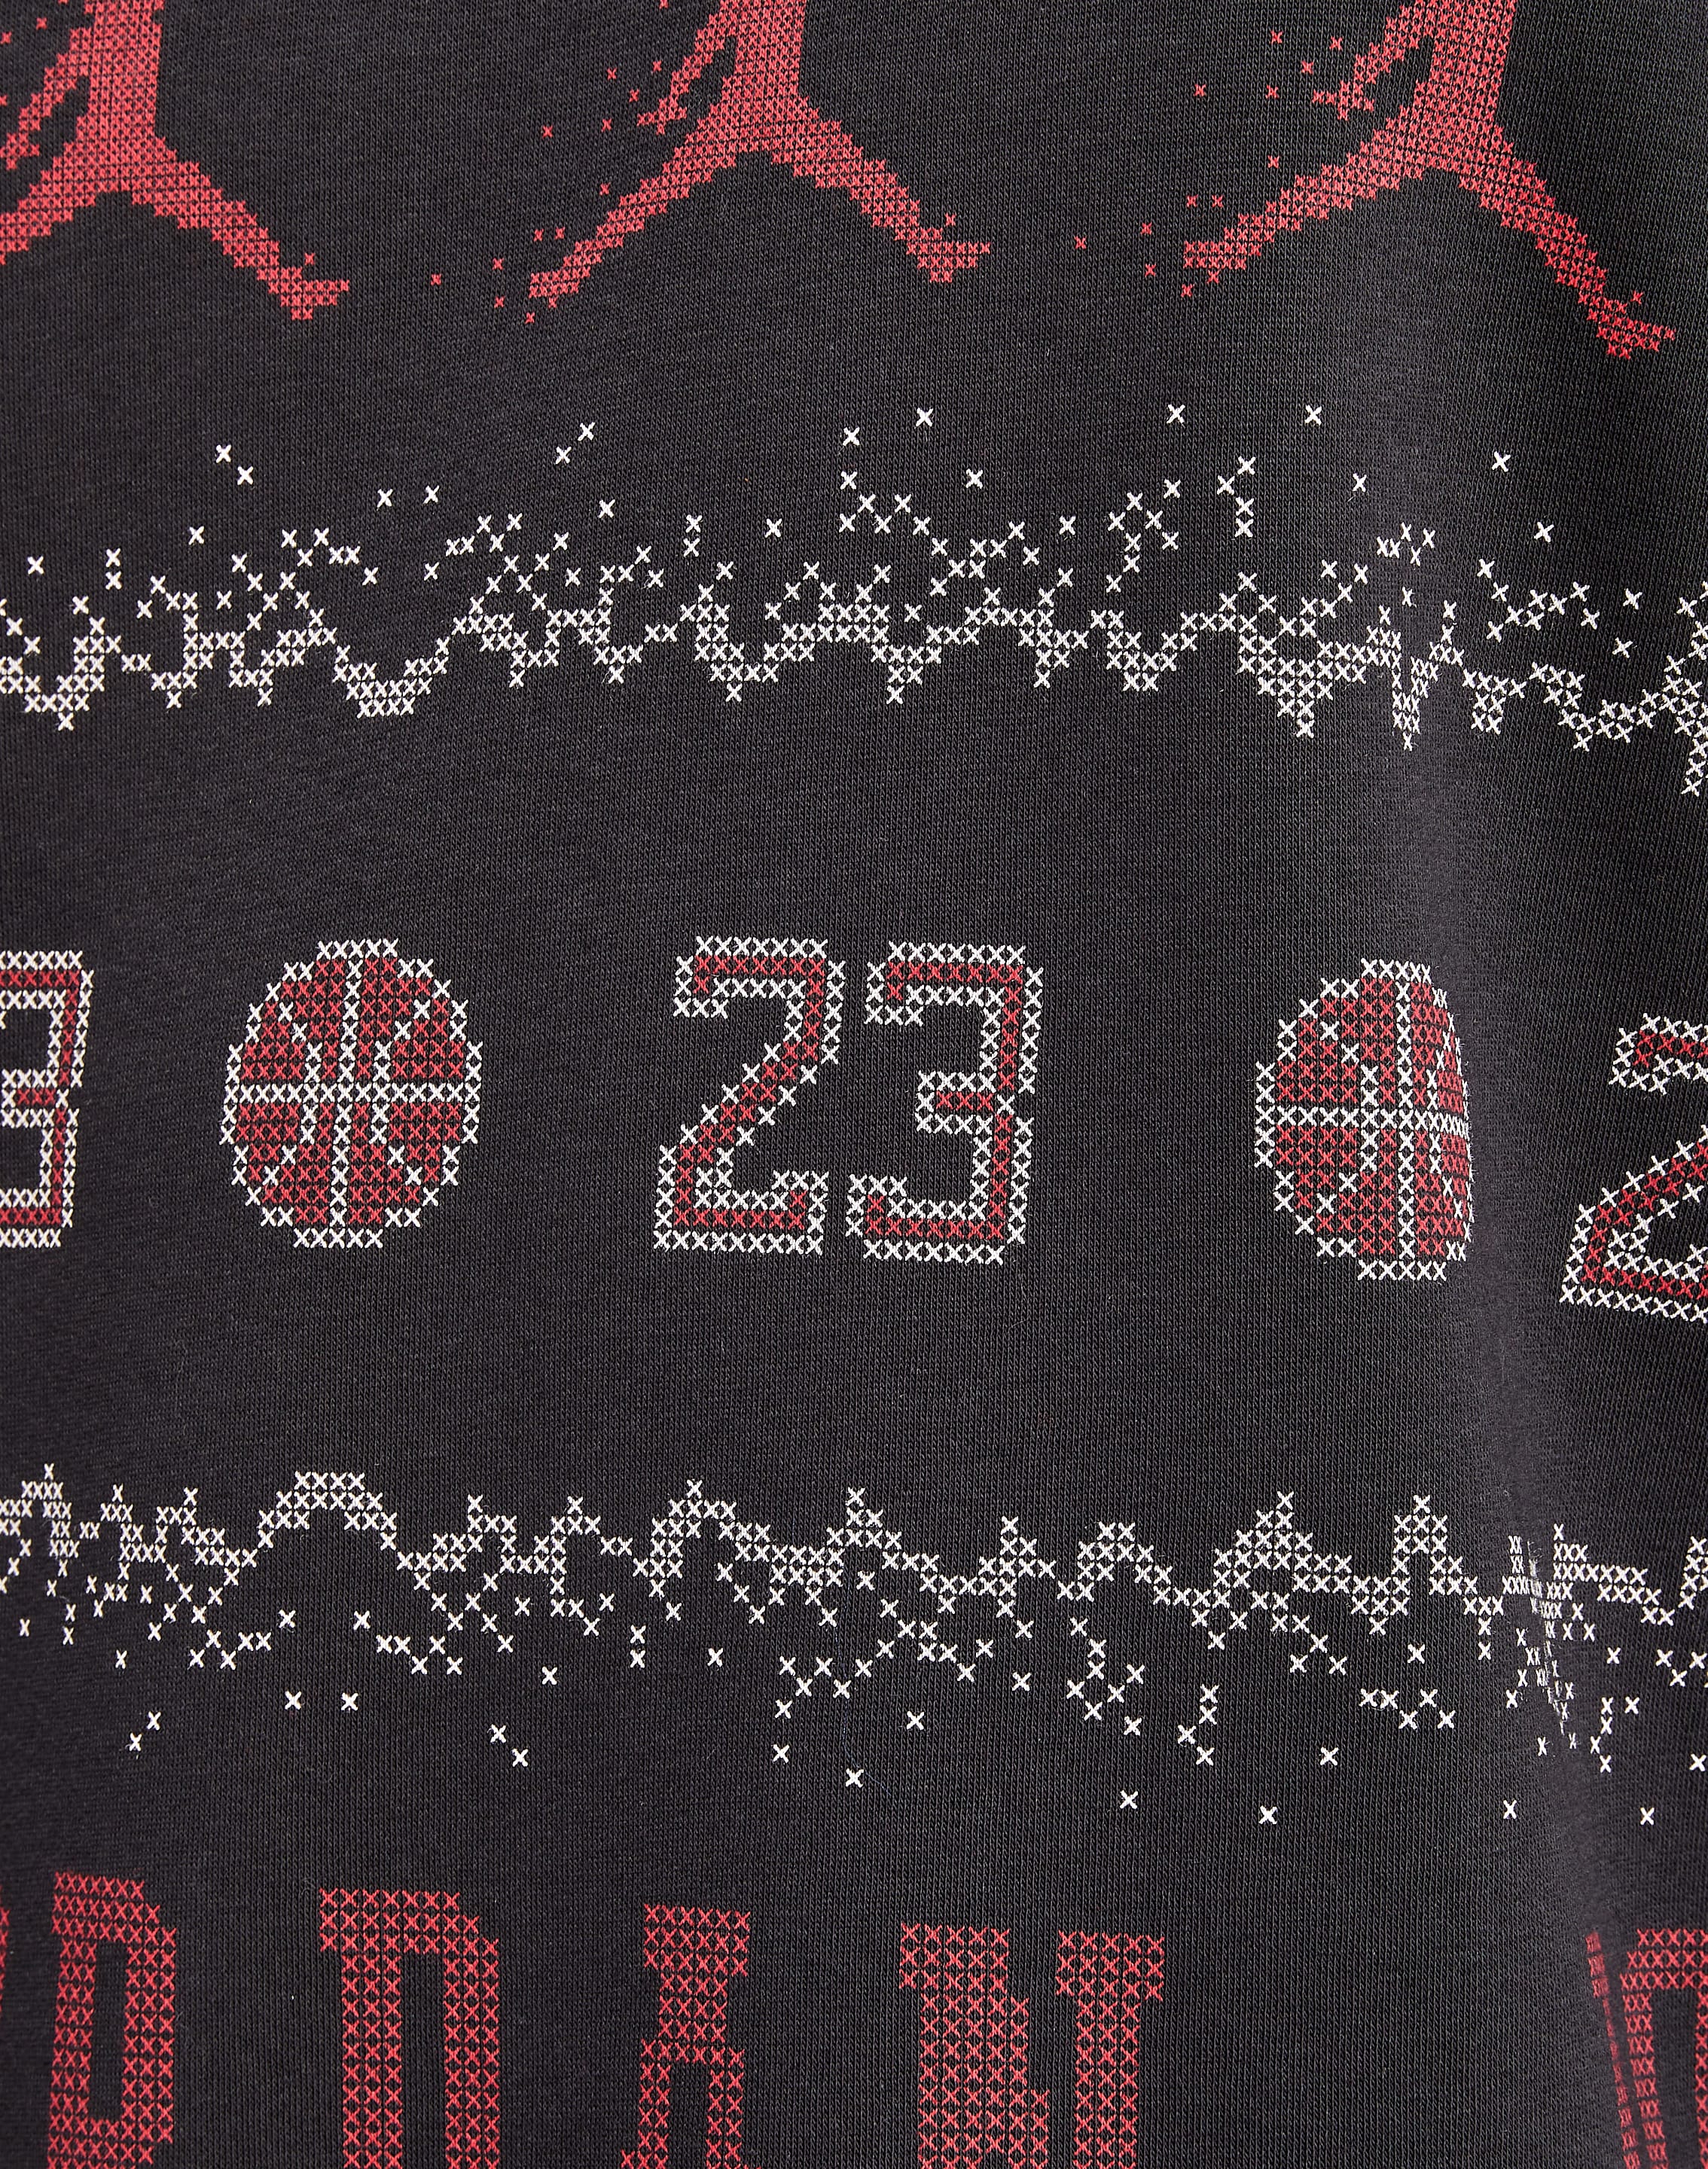 Jordan Holiday Fleece Crewneck Sweatshirt – DTLR